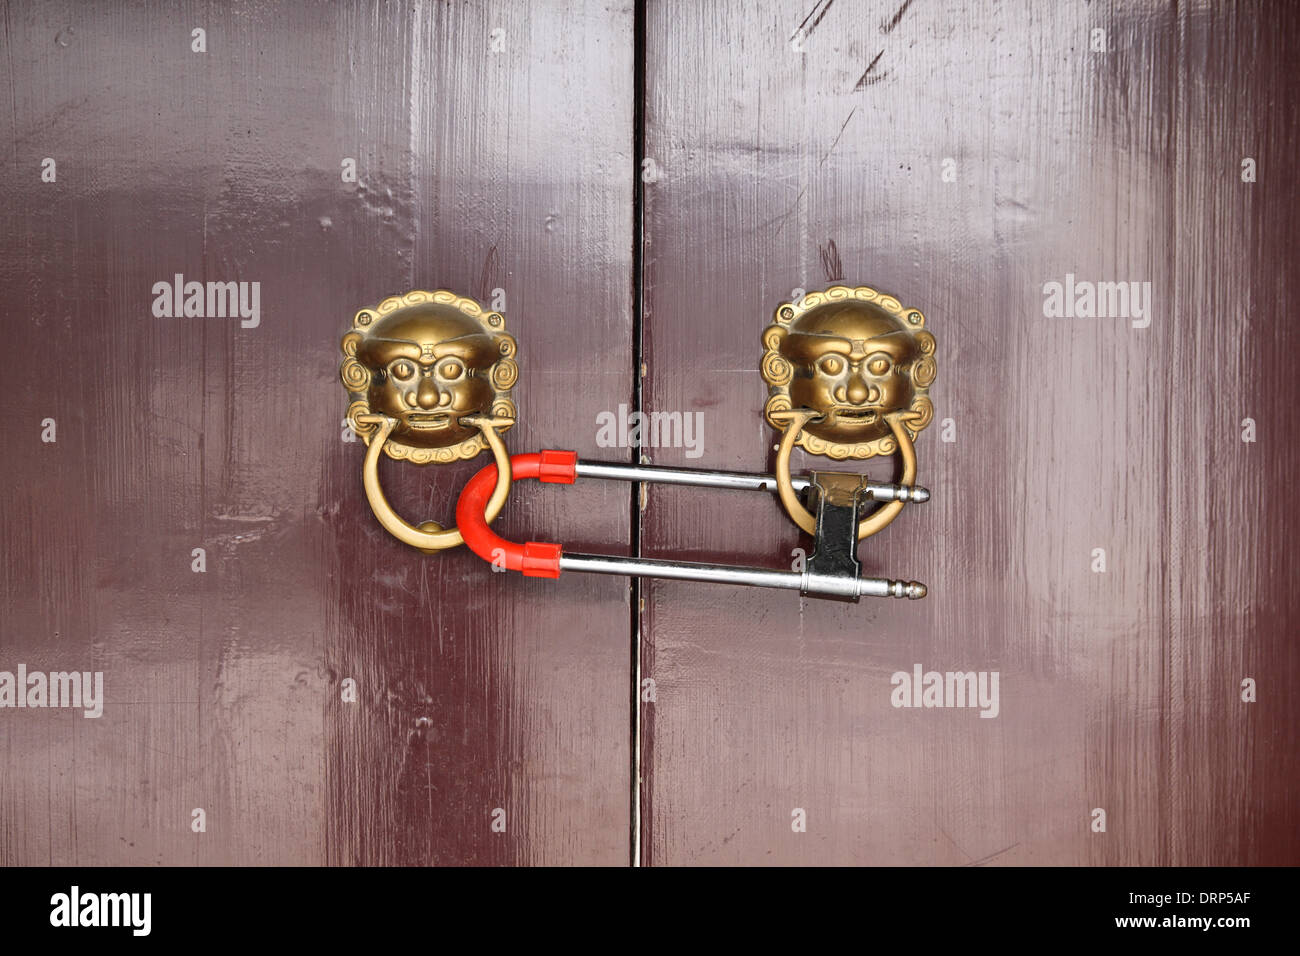 locked door Stock Photo